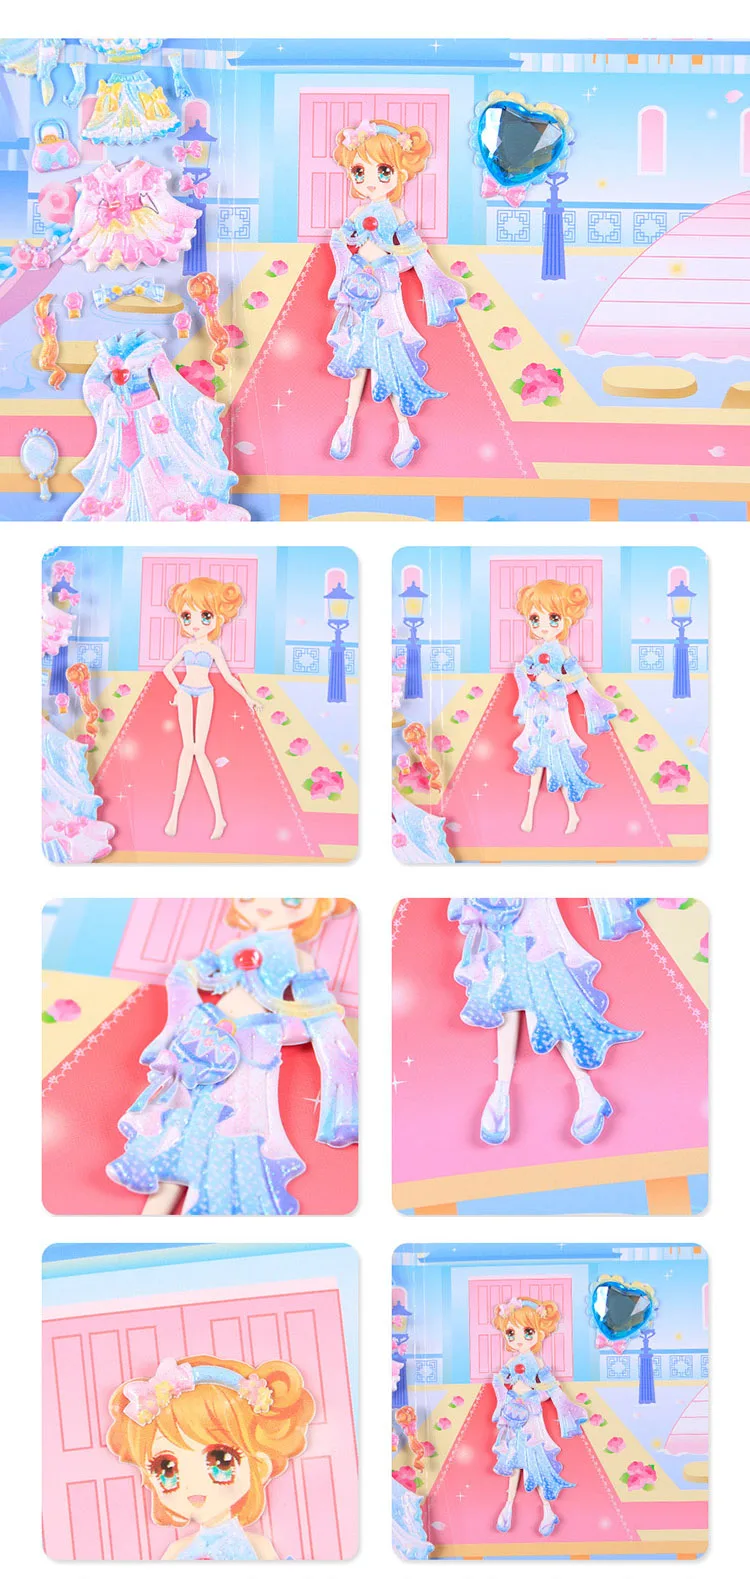 Koteta 1 шт. Красота 3D пышные наклейки s одеваются наклейка Принцесса для девочки Рождественский подарок игрушка водонепроницаемый Скрапбукинг DIY украшения